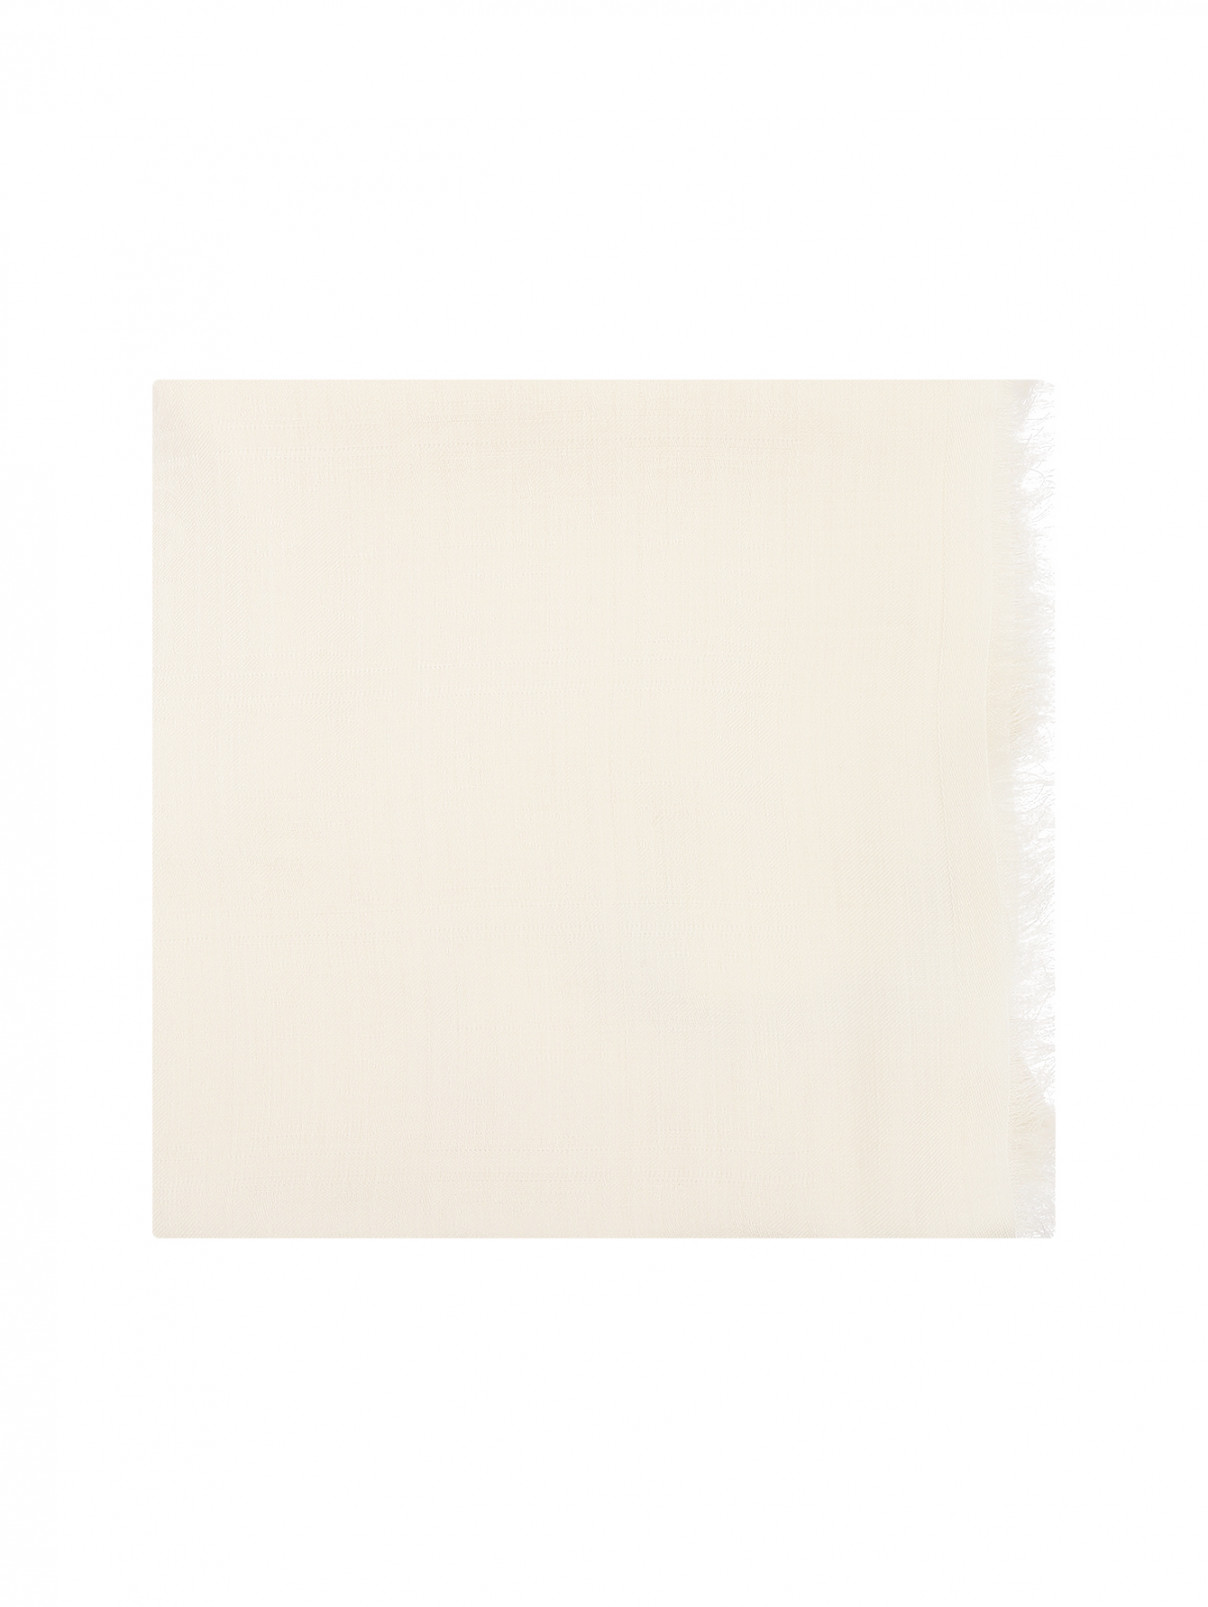 Однотонный платок из шерсти и шелка Luisa Spagnoli  –  Общий вид  – Цвет:  Белый